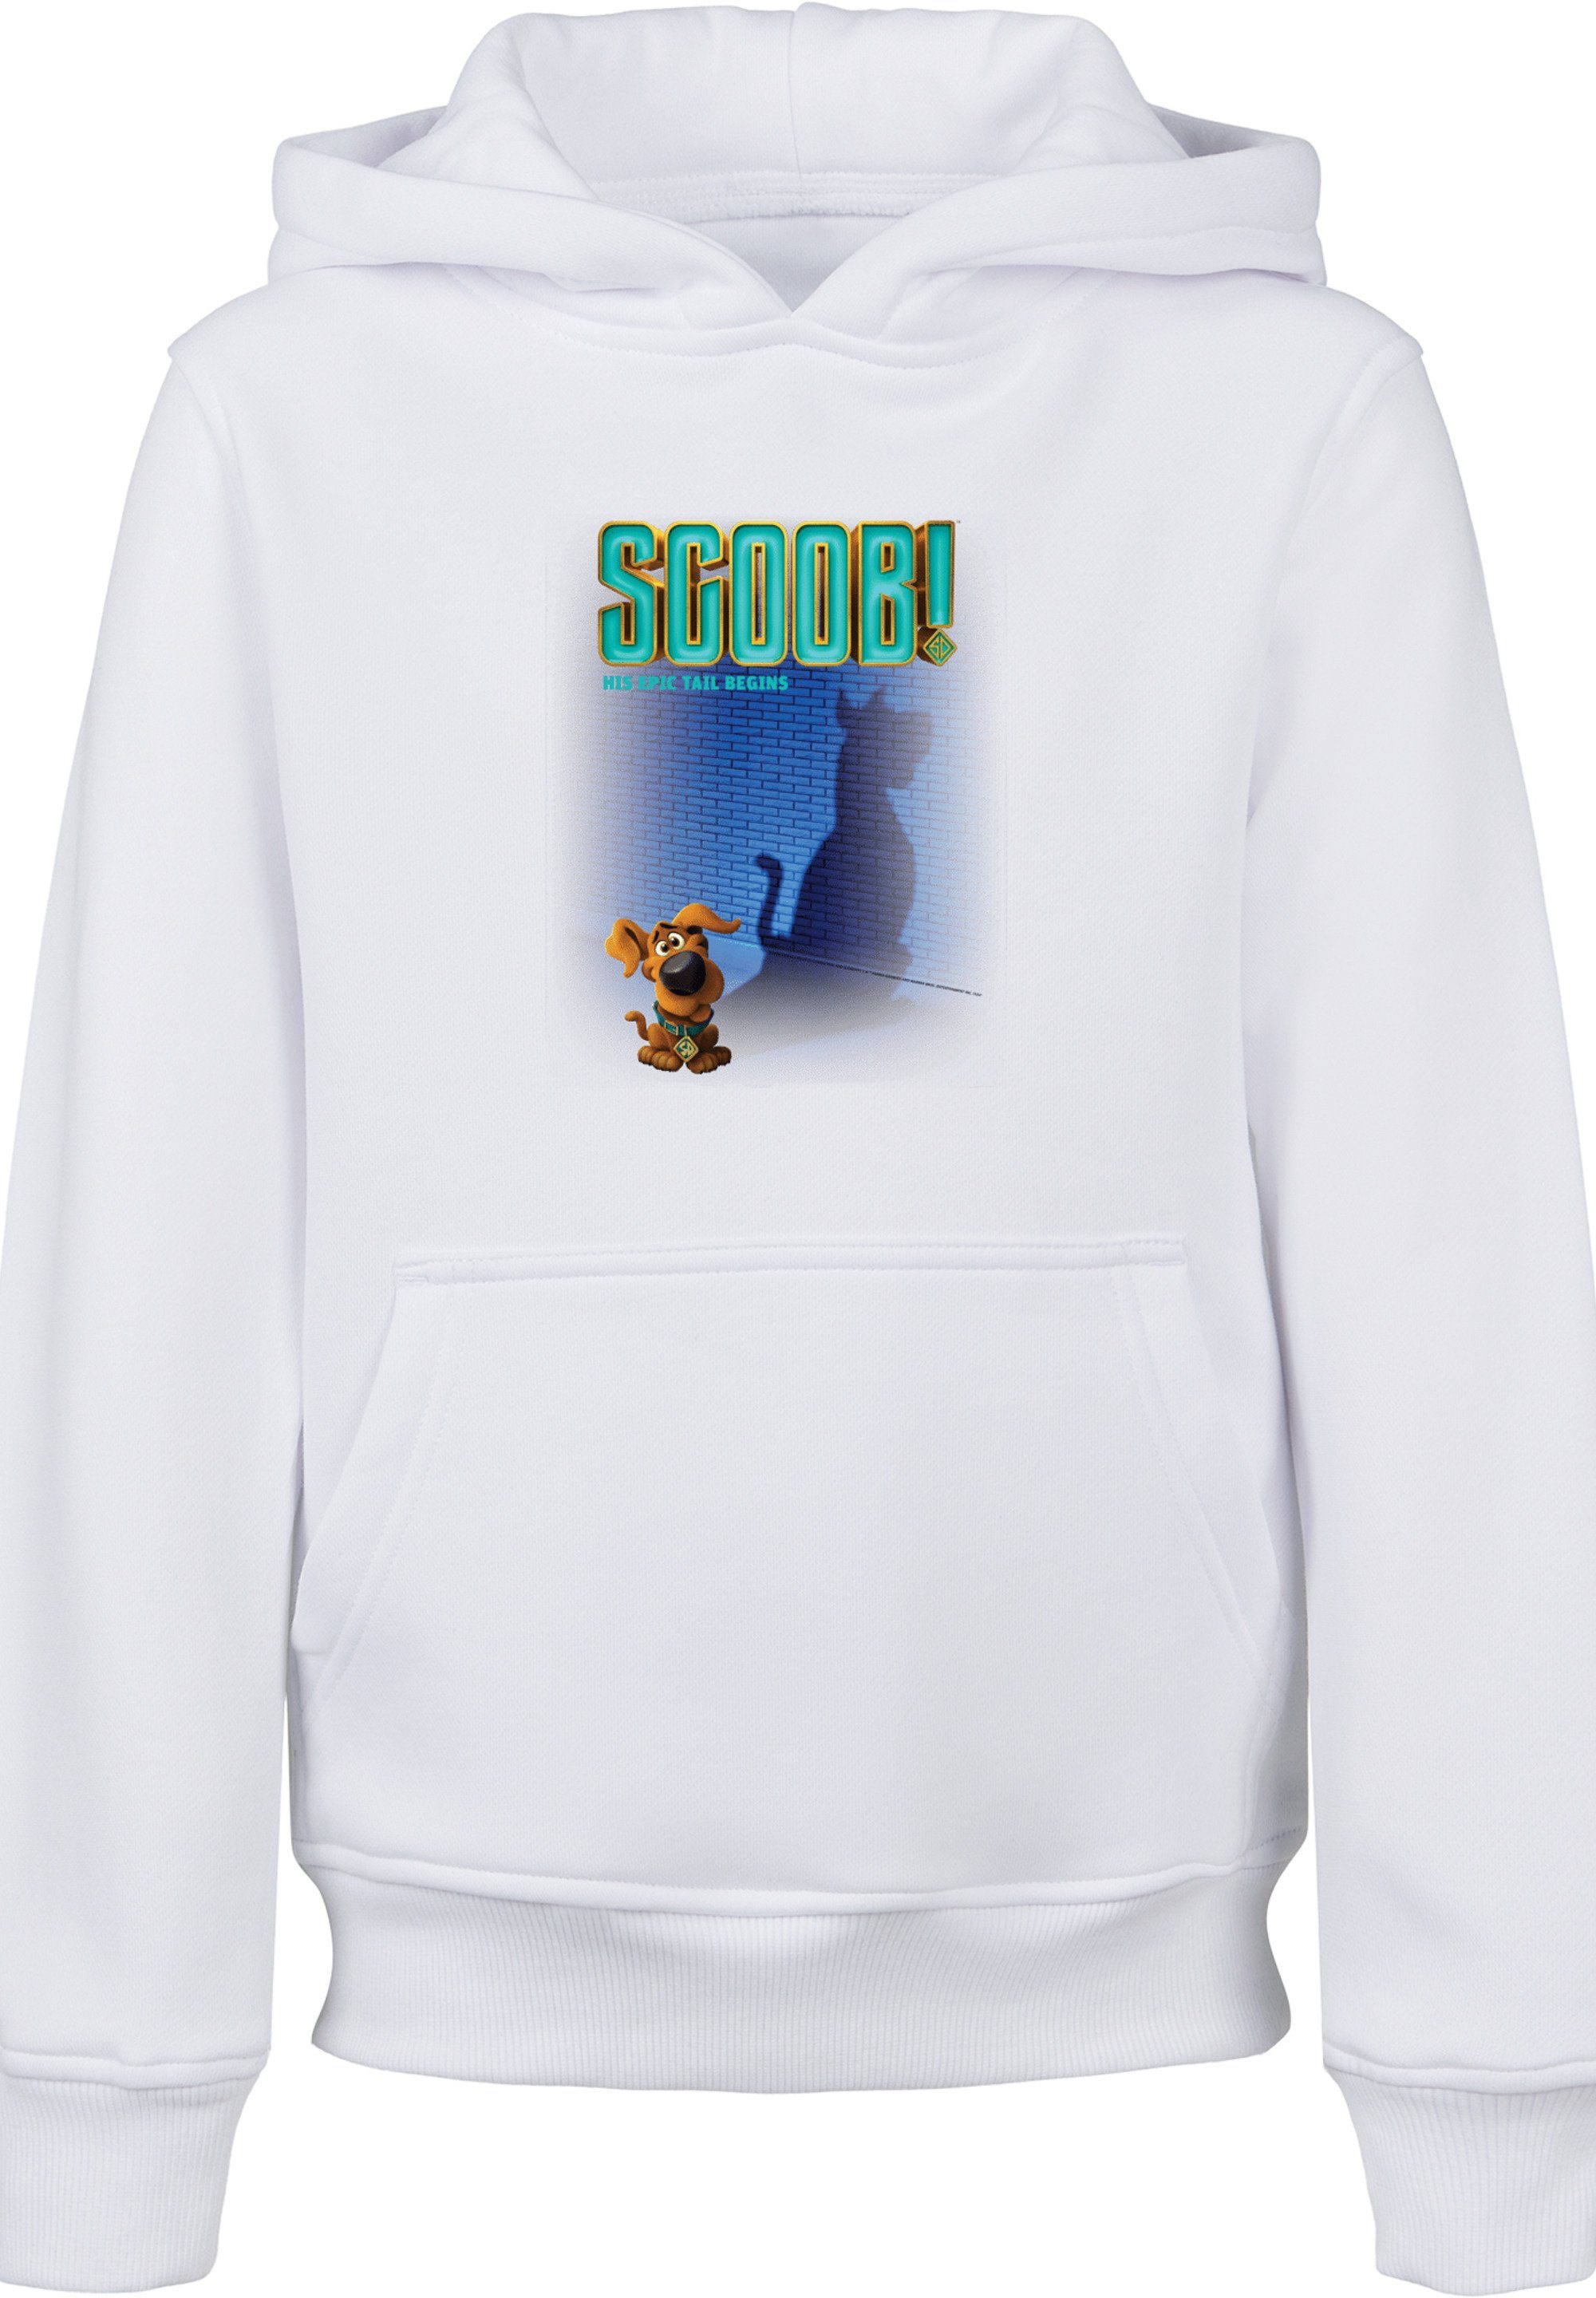 Sweatshirt Doo F4NT4STIC Unisex Scooby Poster Kinder,Premium Merch,Jungen,Mädchen,Bedruckt Movie